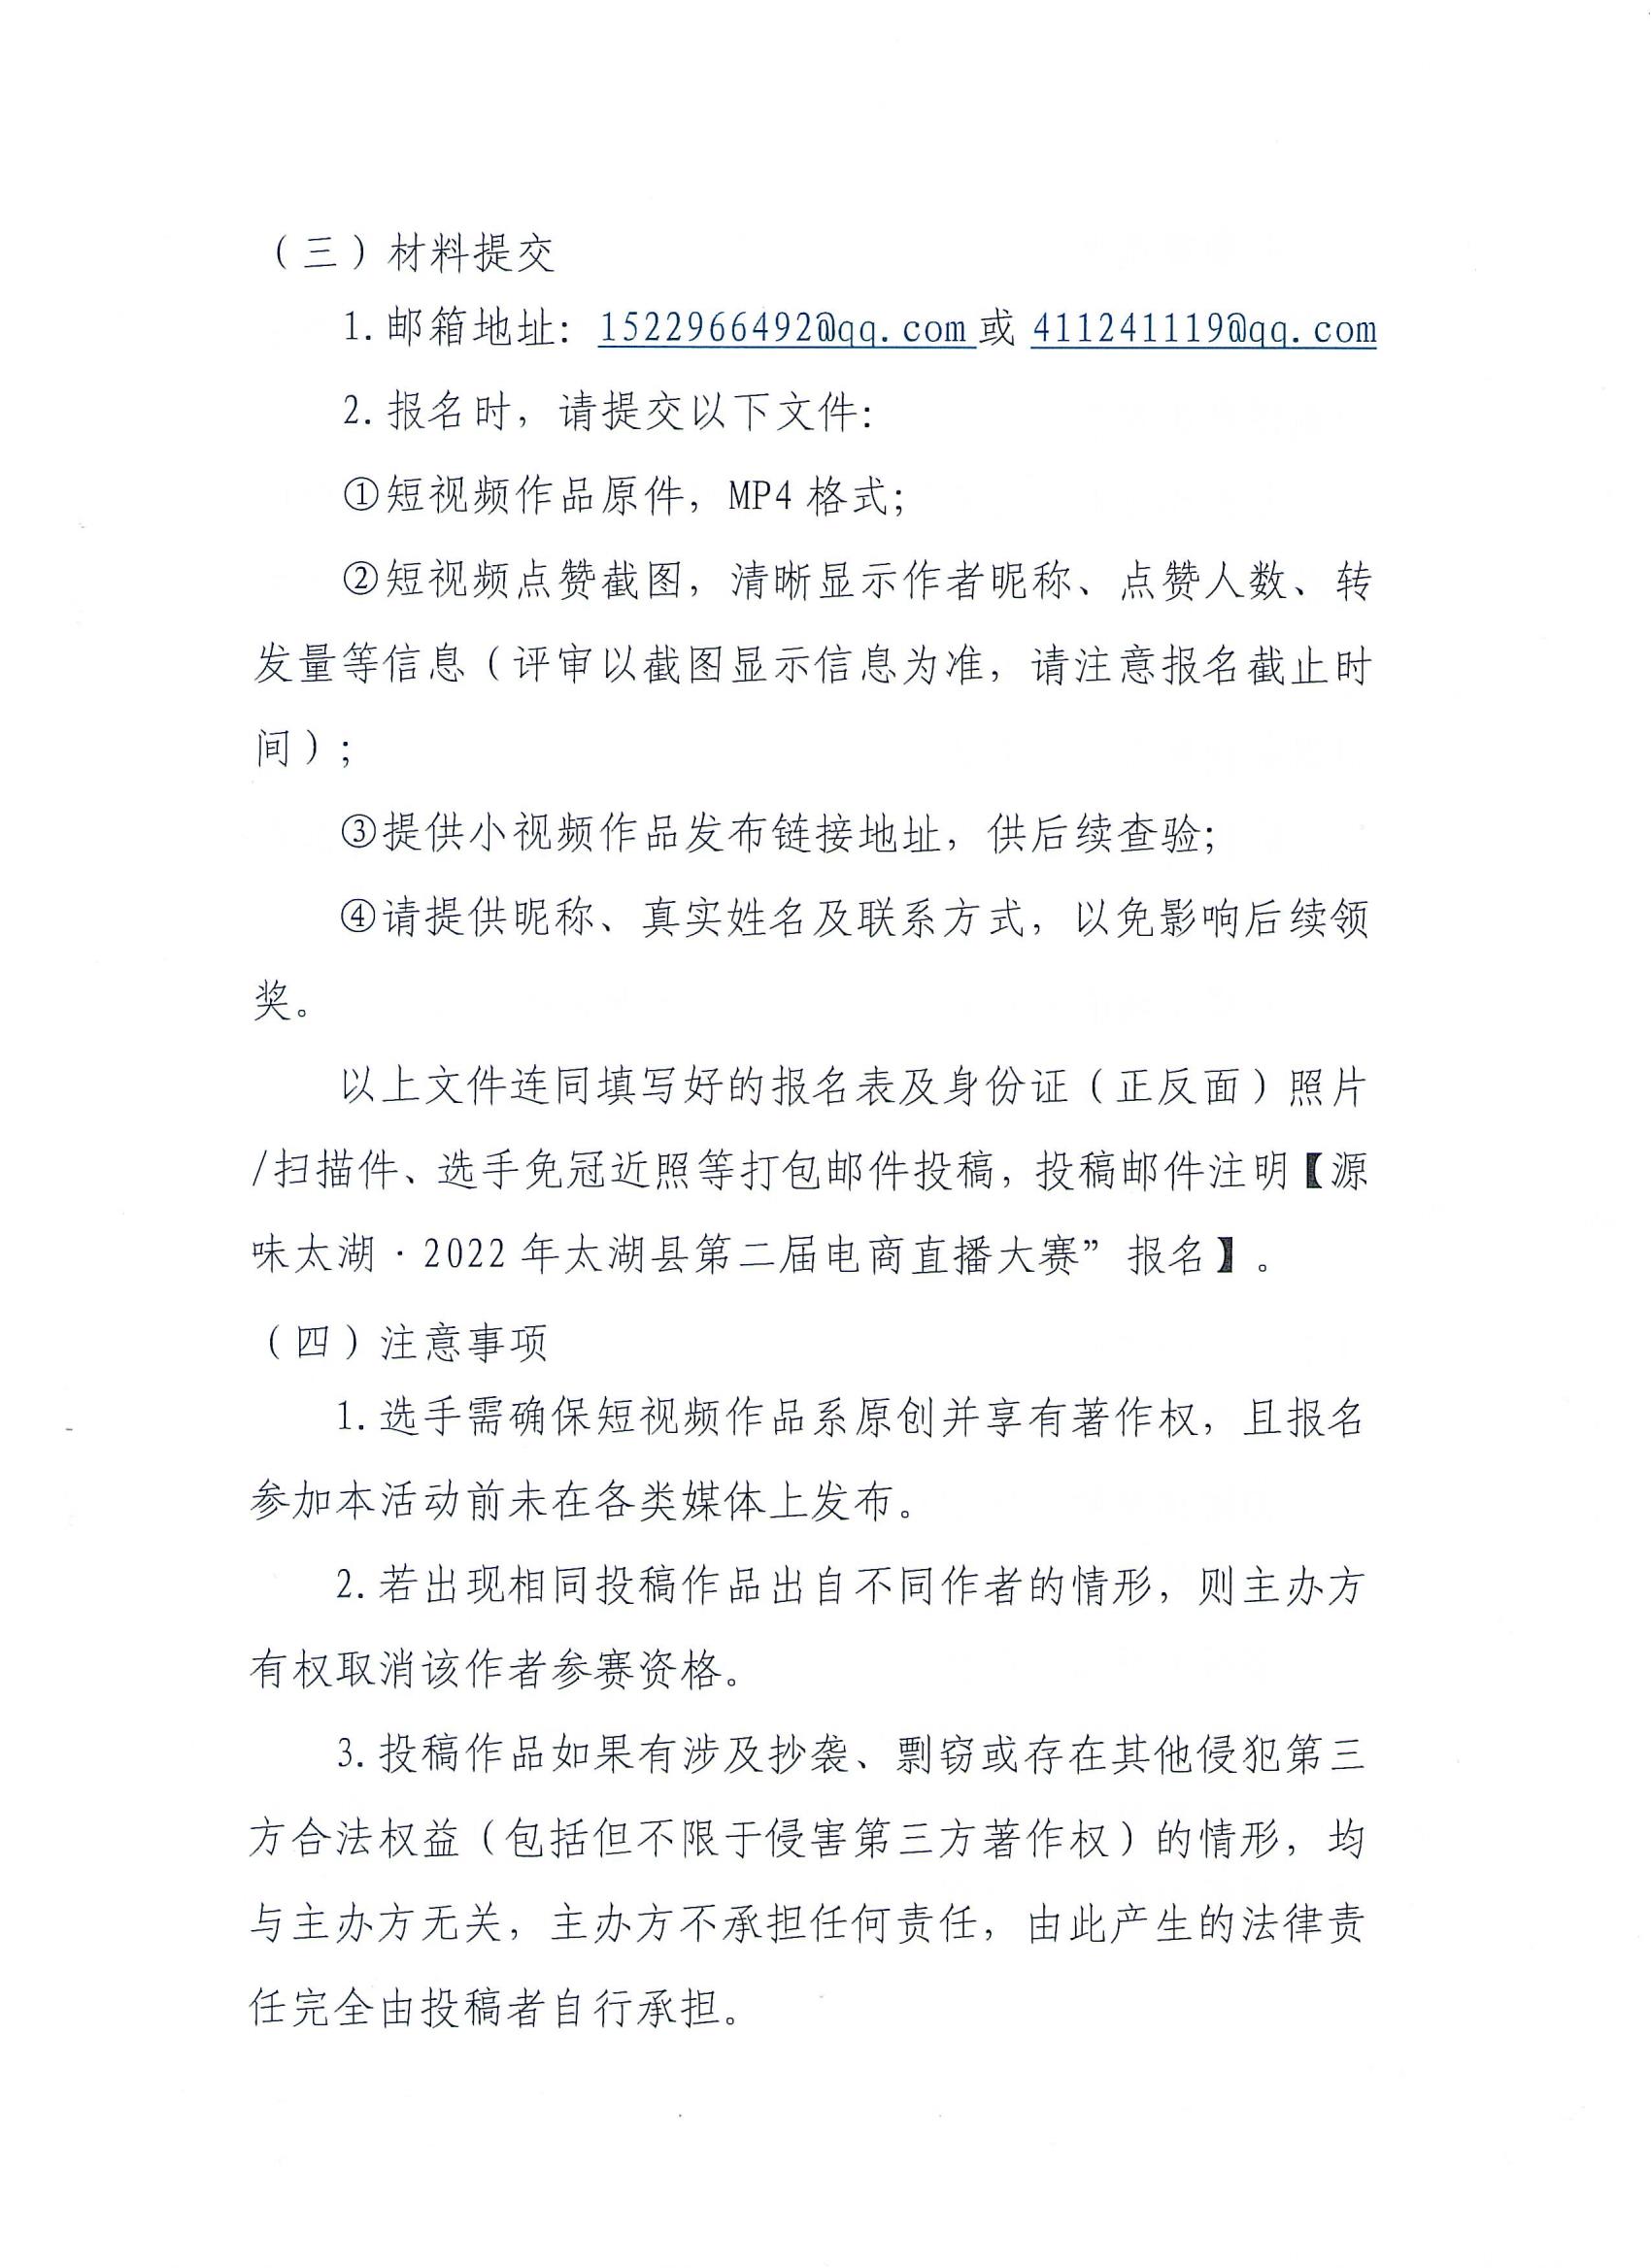 关于开展2022年太湖县第二届电商直播大赛的通知(1)_08.jpg